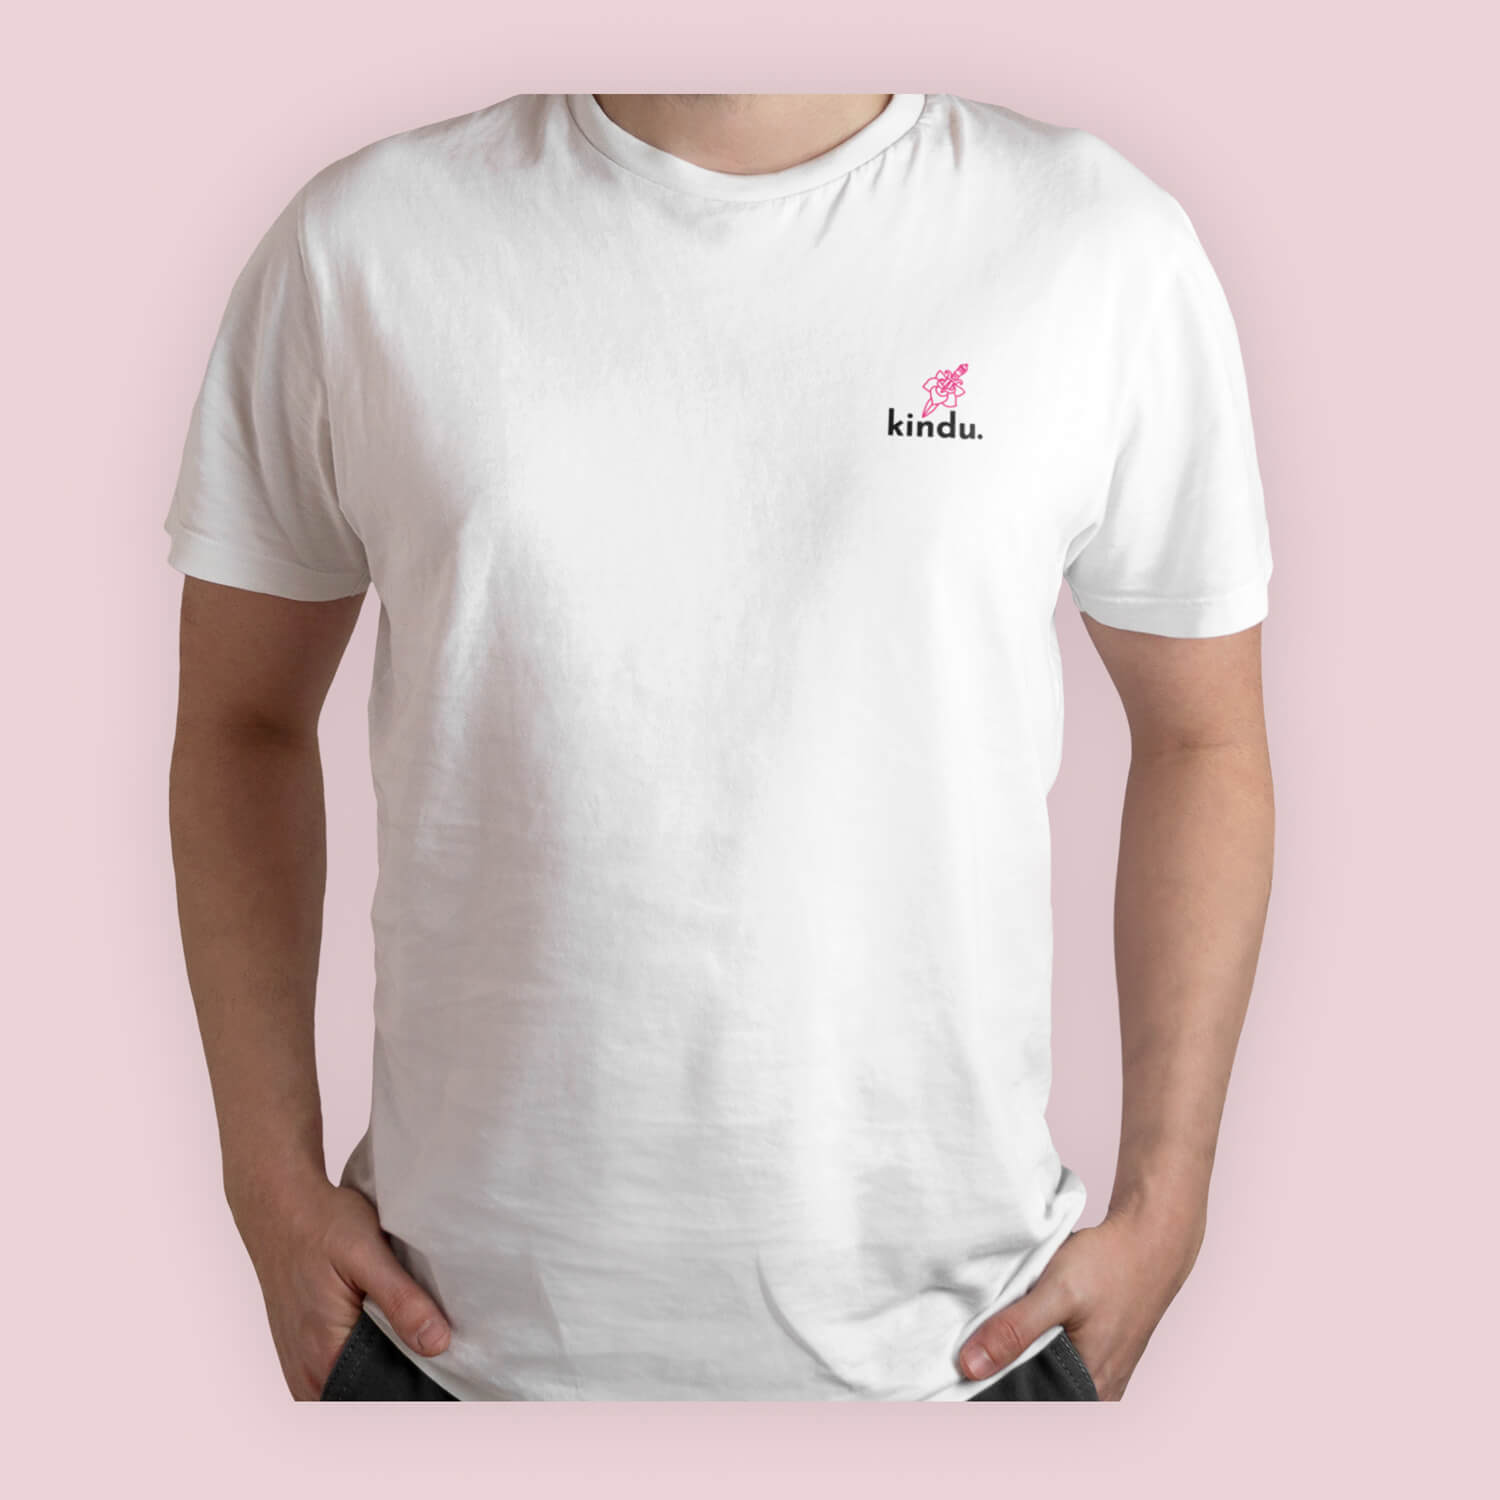 Imagen de la camiseta blanca de la tienda de ropa Kindu, rotulada en la parte delante con el logo y una rosa de estilo tattoo.